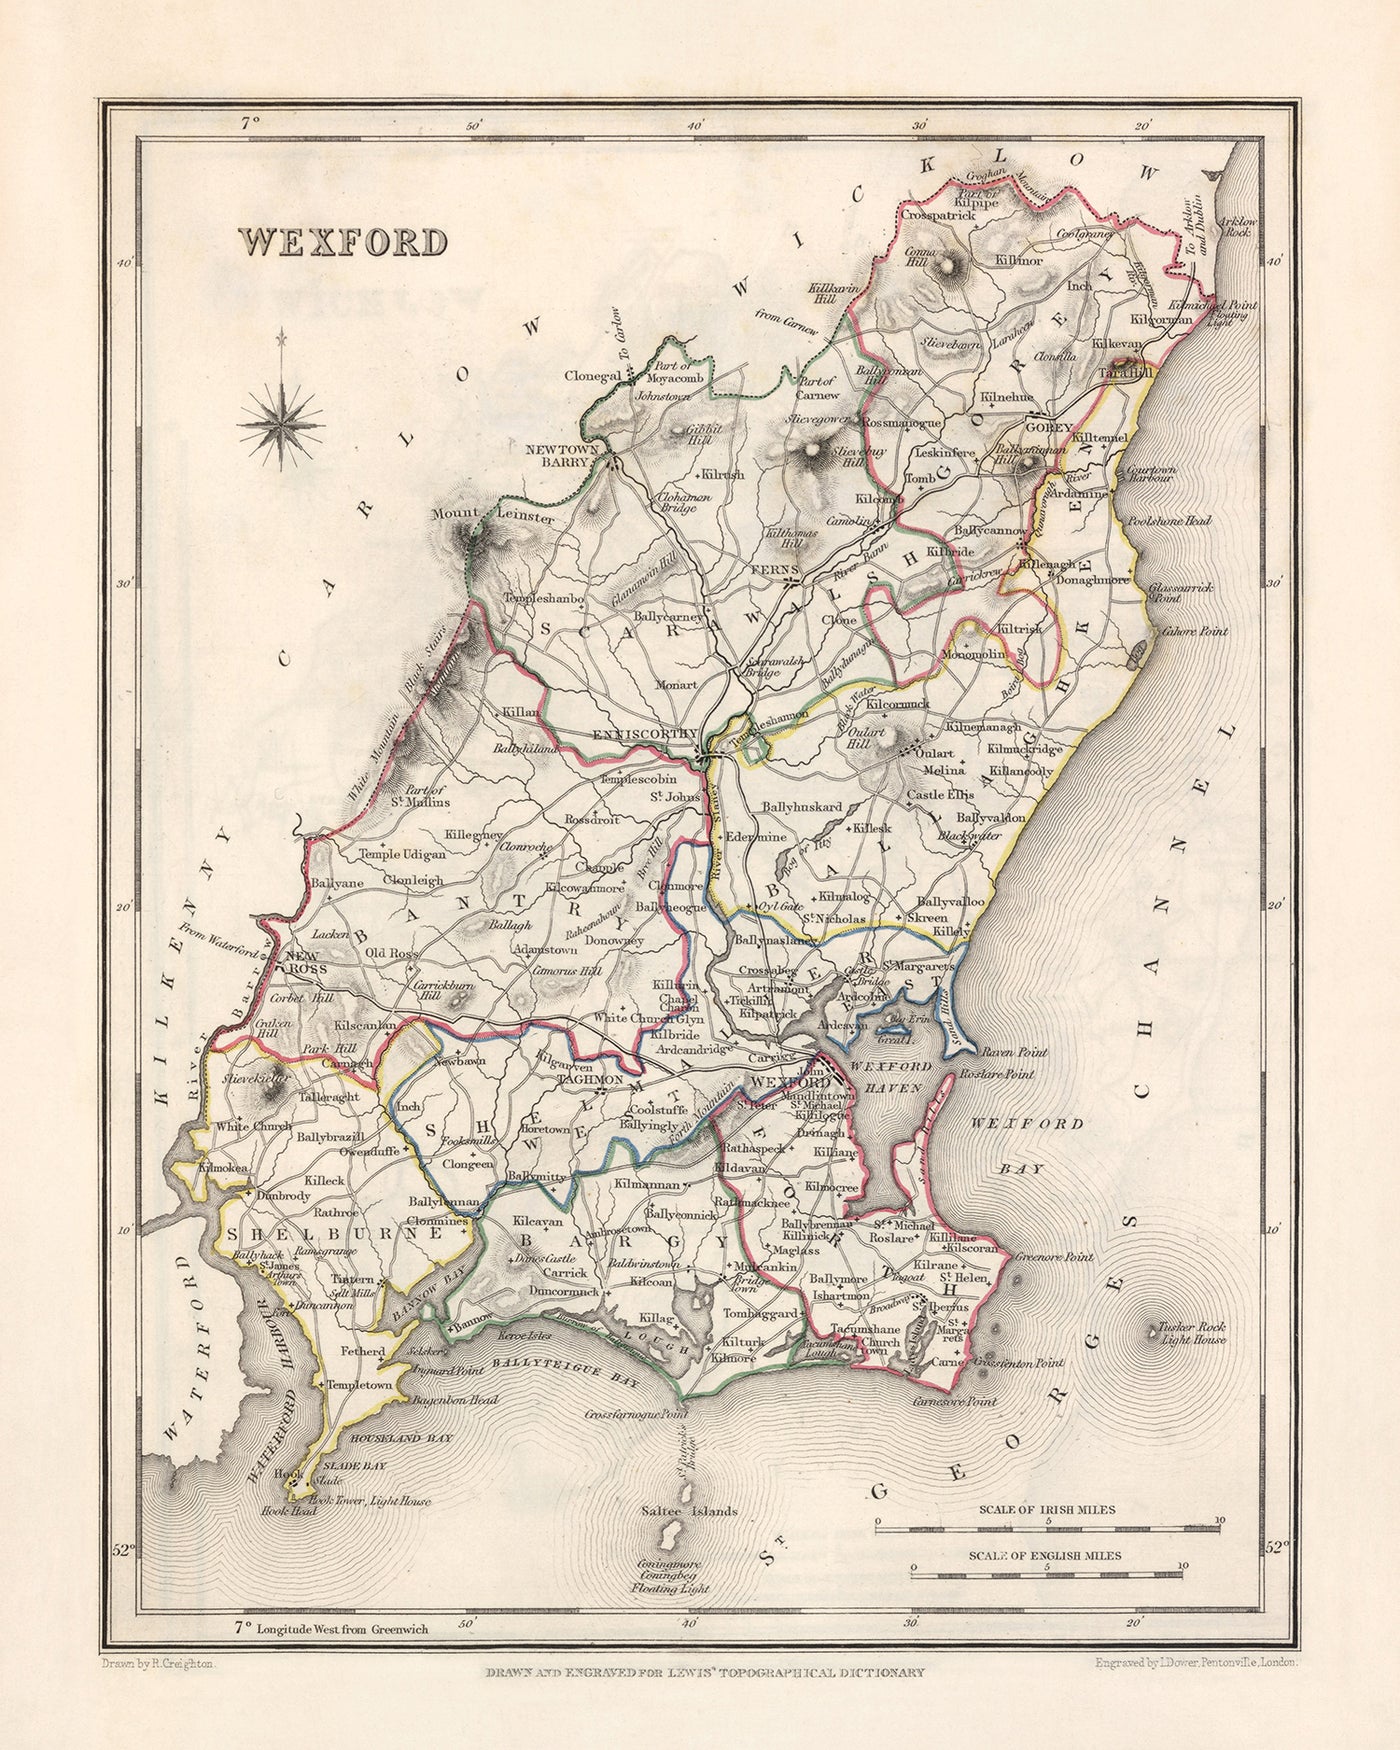 Alte Karte der Grafschaft Wexford von Samuel Lewis, 1844: Enniscorthy, New Ross, Gorey, Farne und historische Merkmale